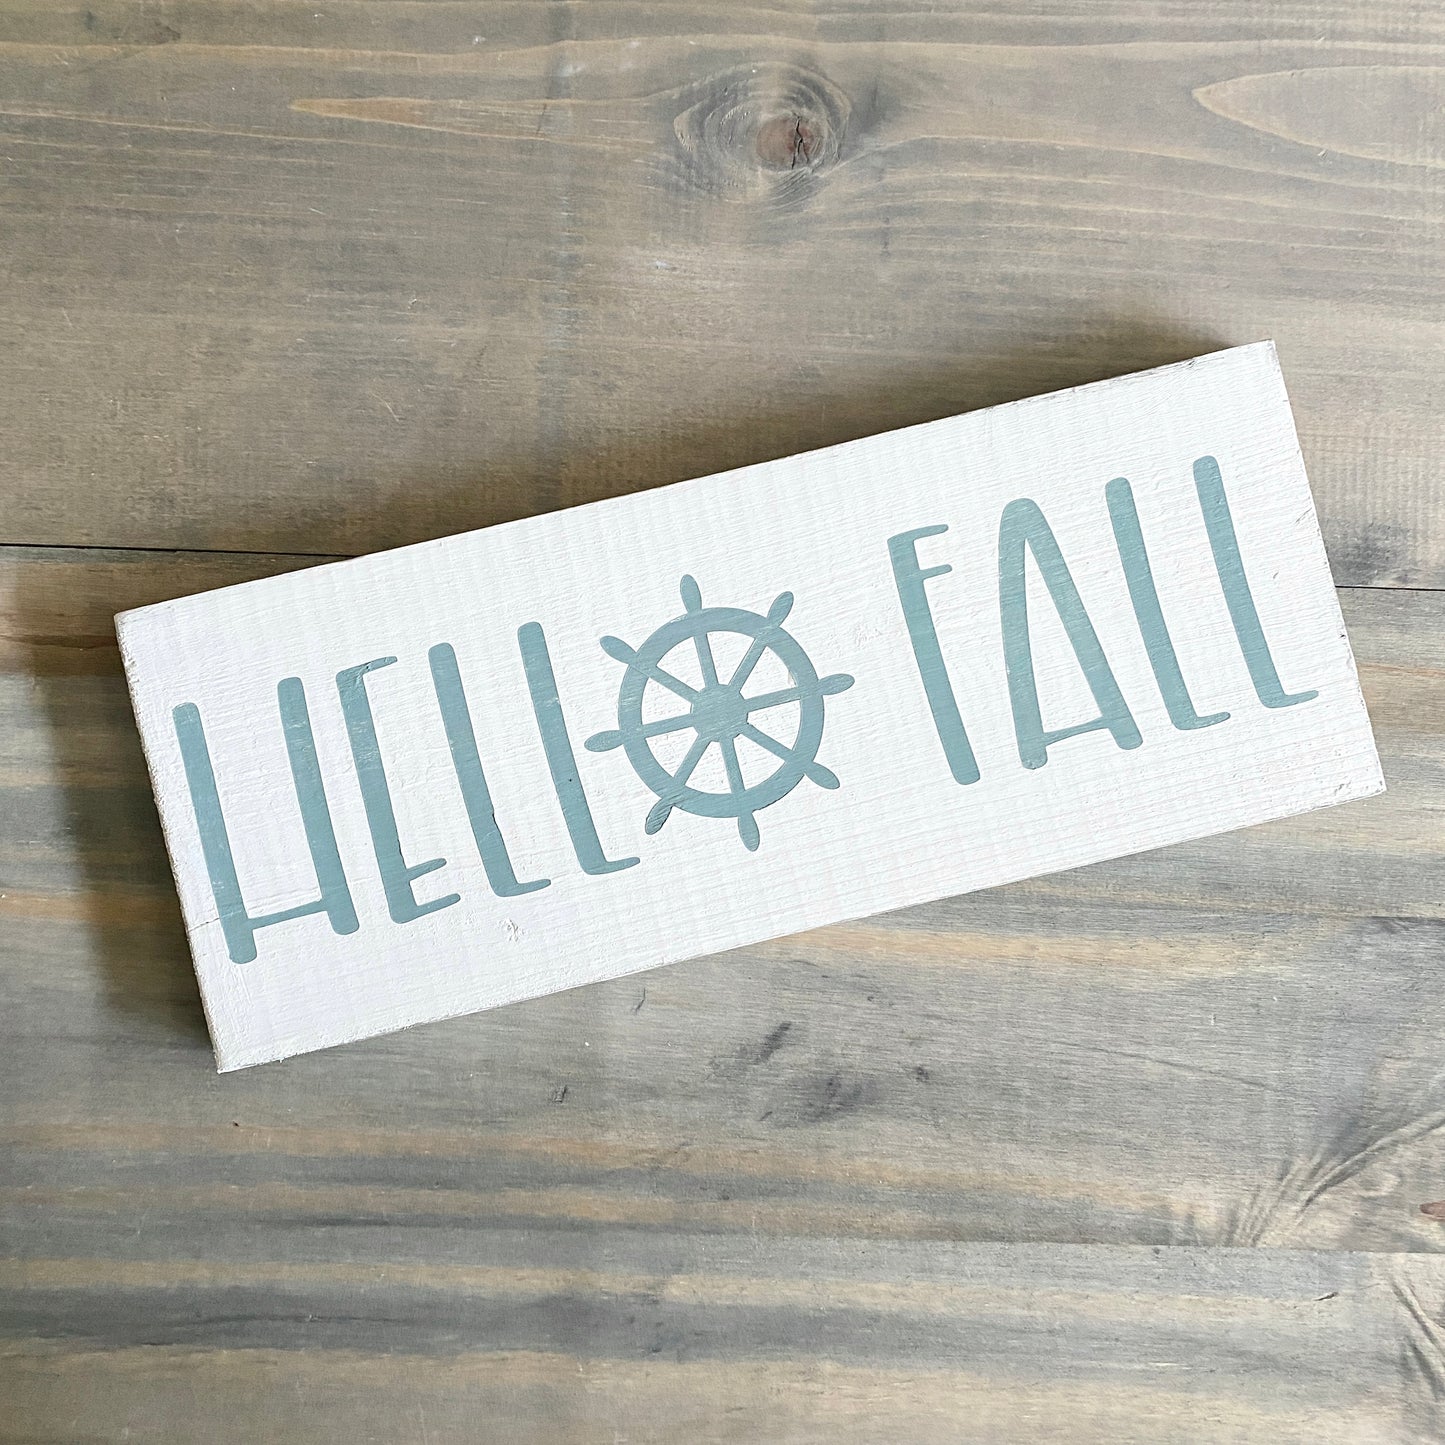 Hello Fall Ship Wheel Sign